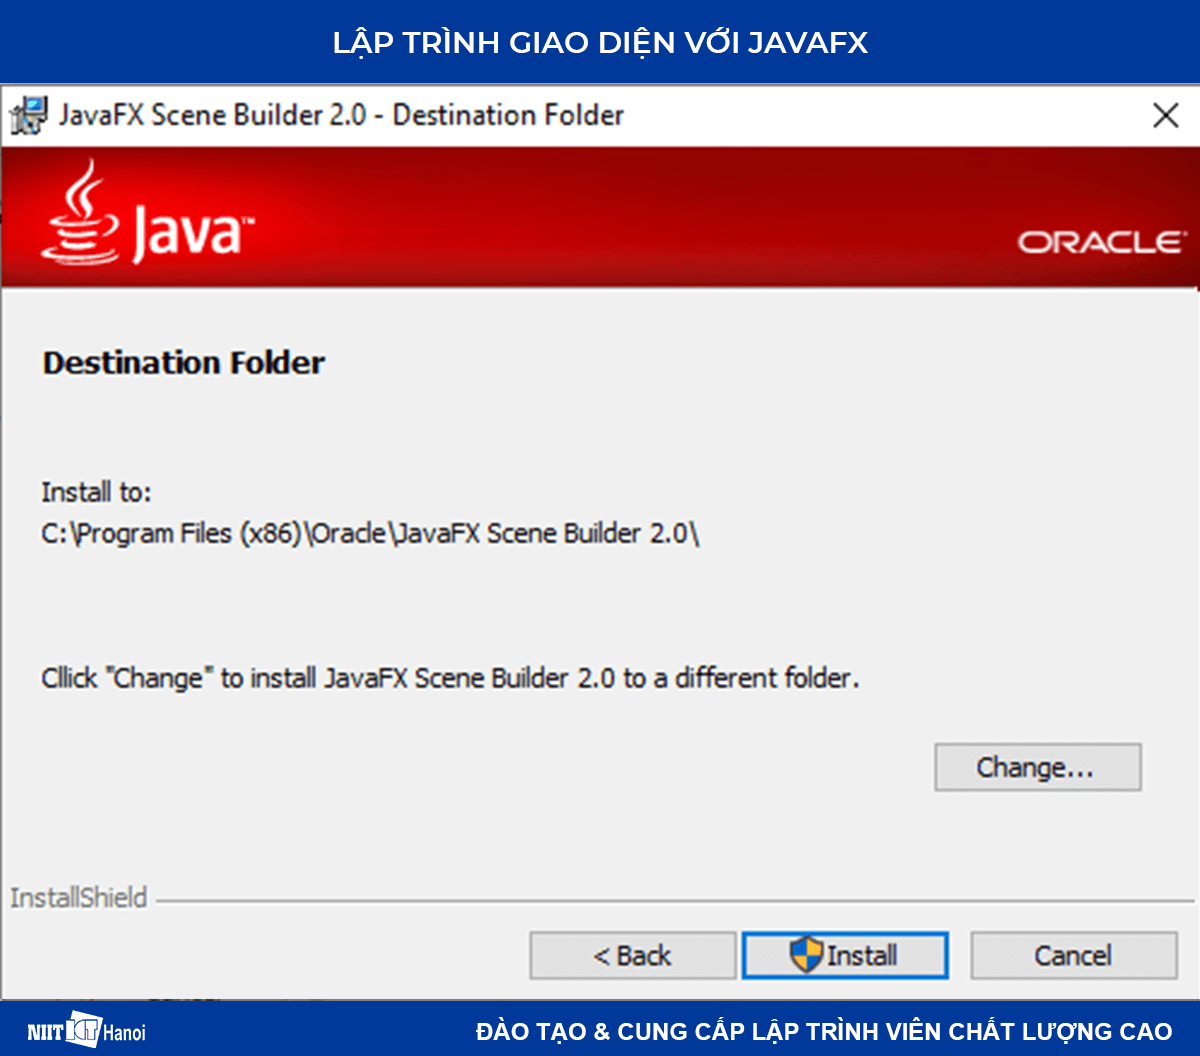 Lập trình giao diện với JavaFX: Cài đặt JavaFX Scence Builder - 2